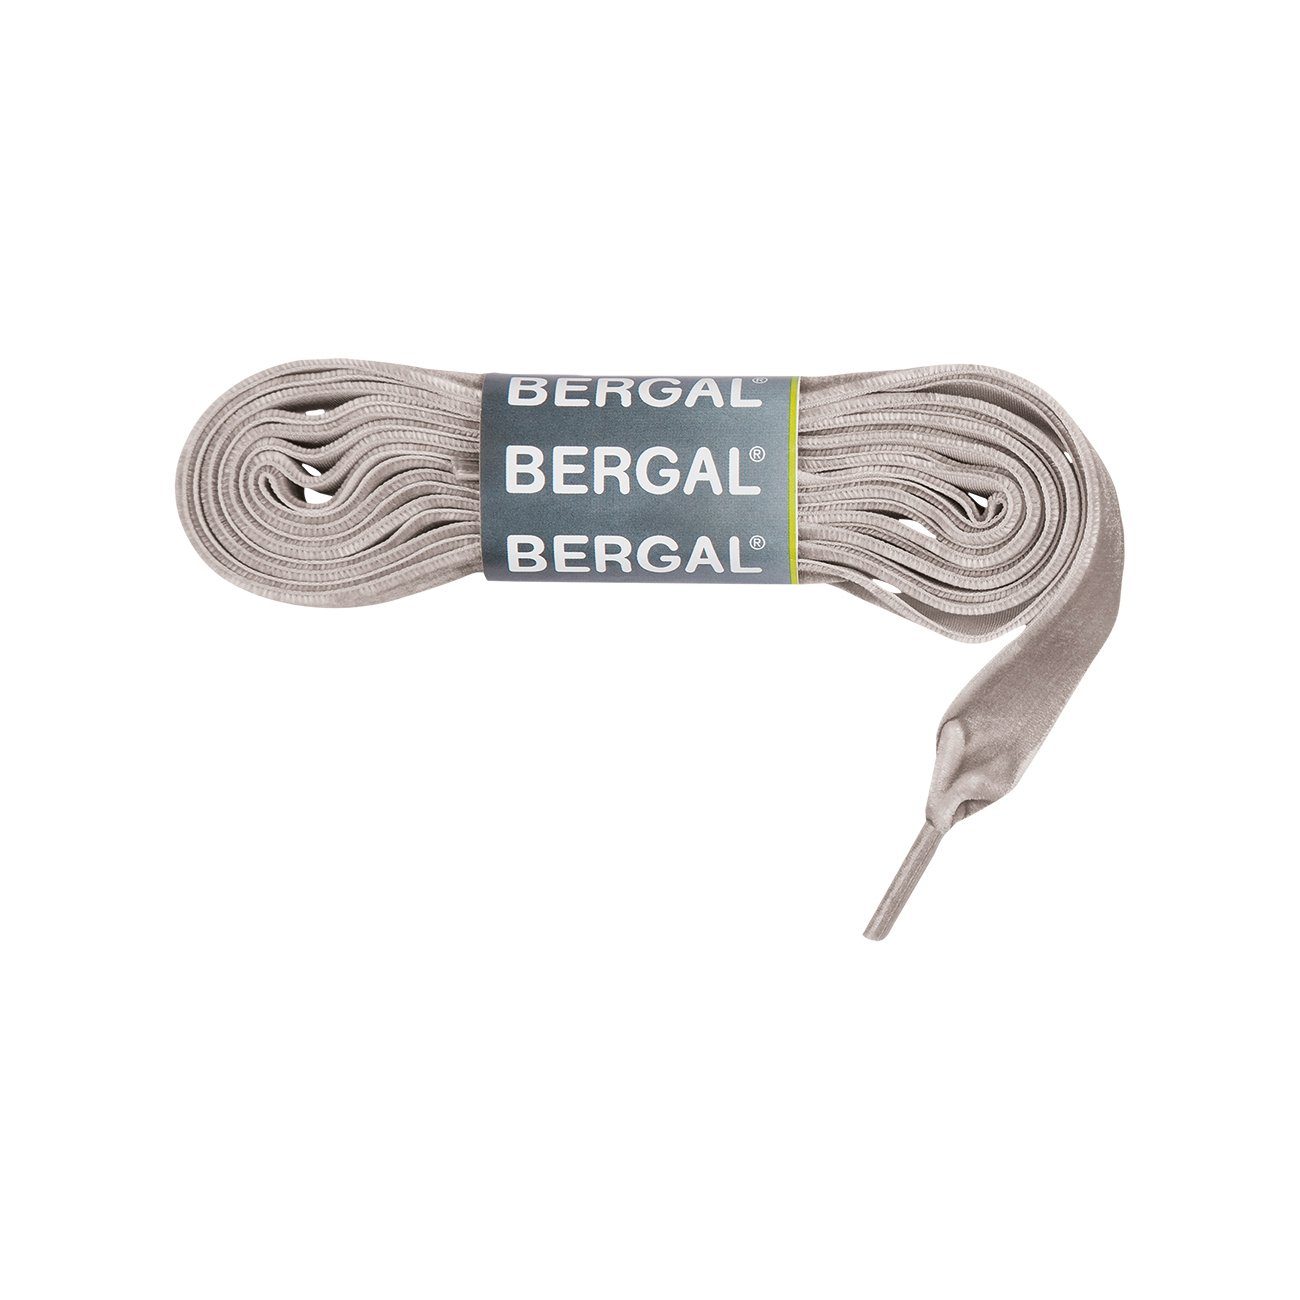 Bergal Schnürsenkel »Samtsenkel Flach ca. 15 mm breit« online kaufen | OTTO